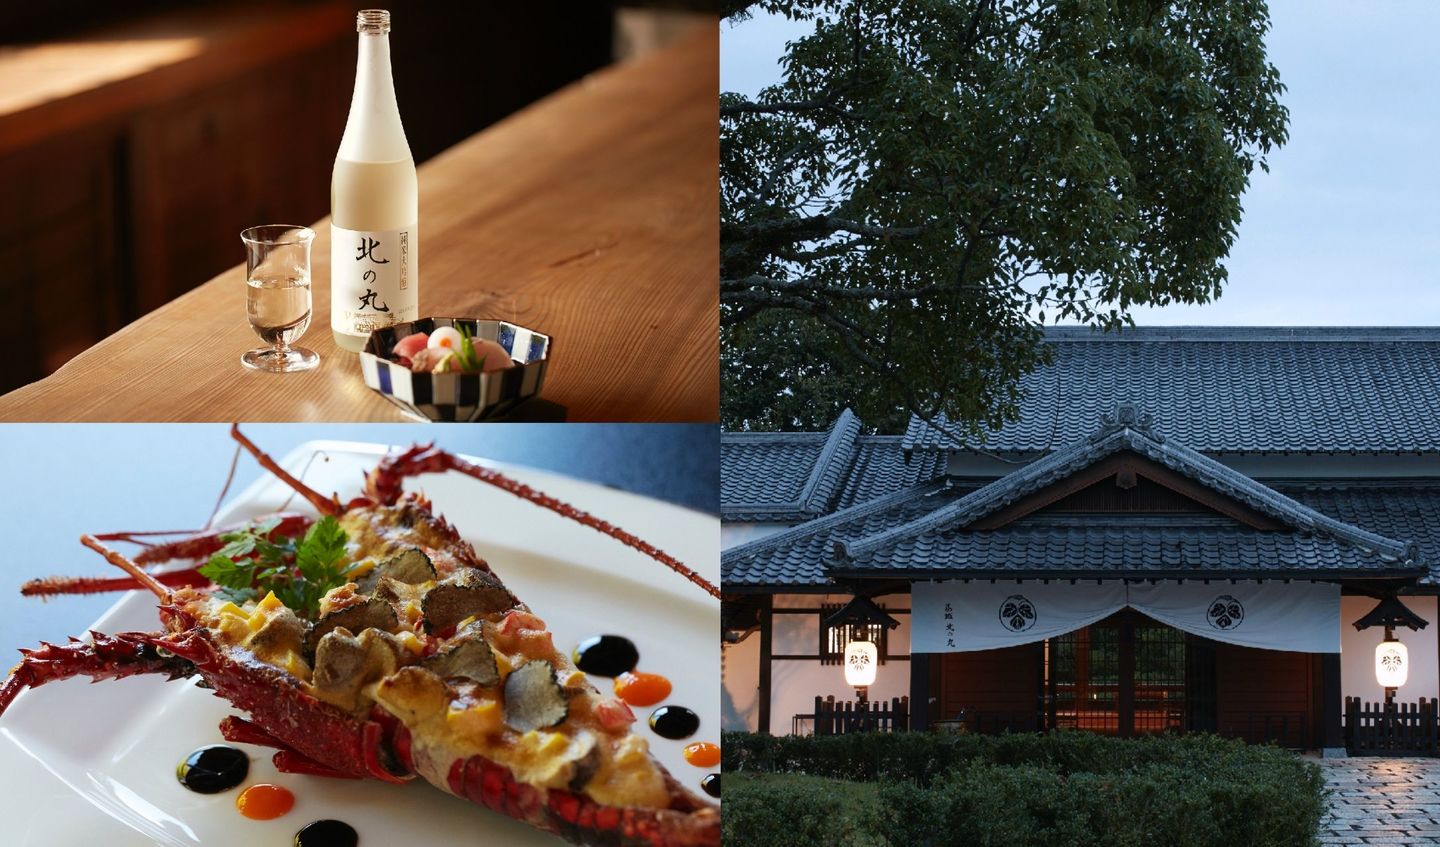 ヤマハリゾート葛城ホテル北の丸の外観と料理、オリジナルの日本酒